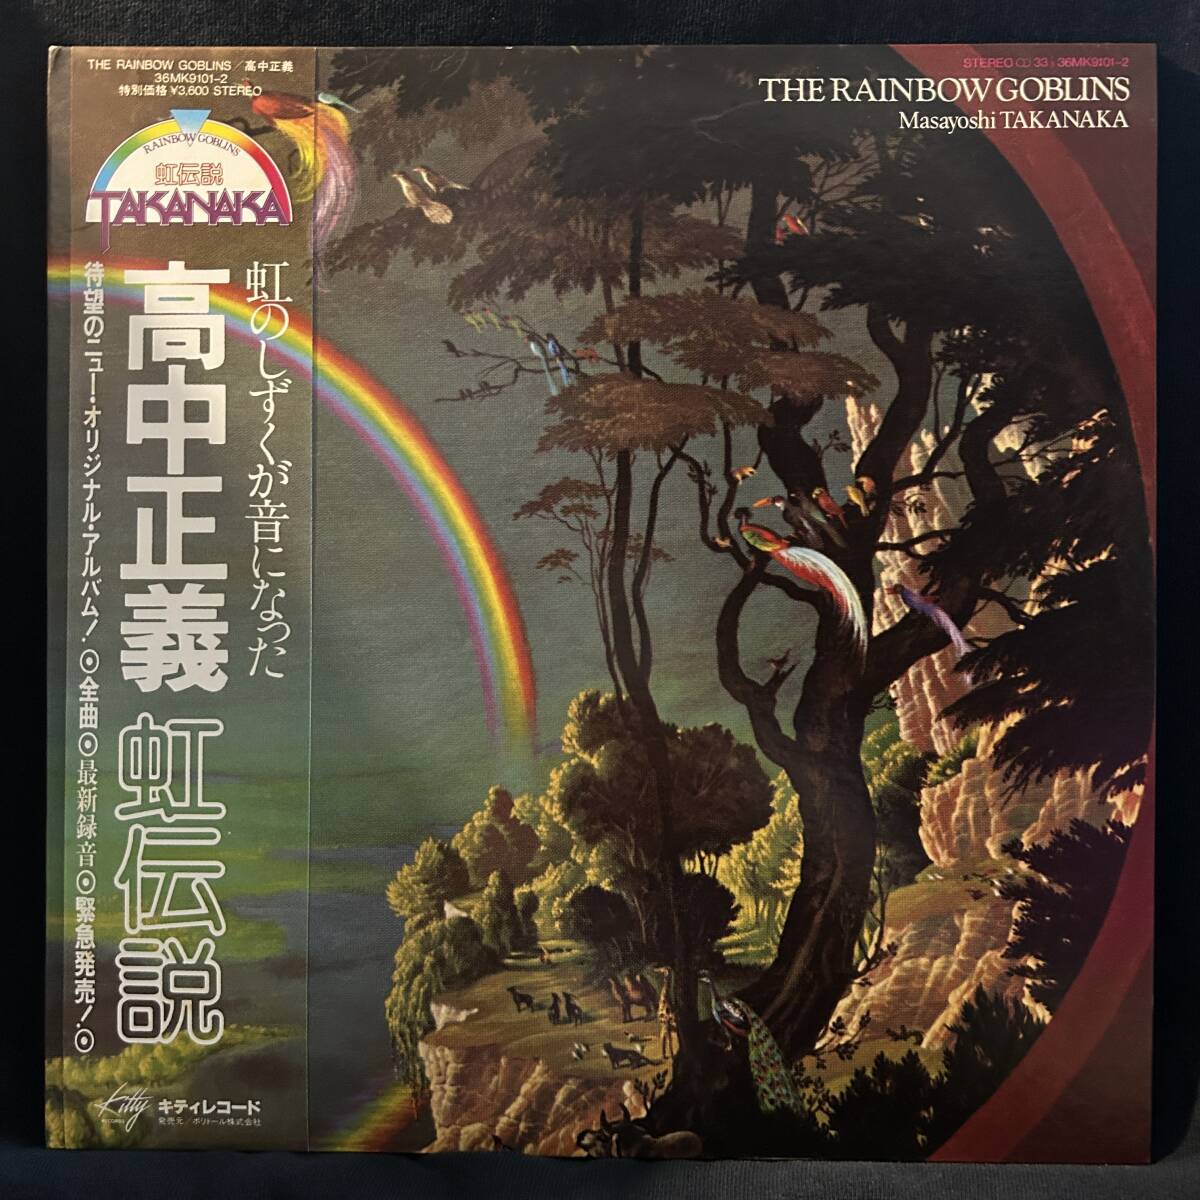 [ внутренний с лентой ] высота средний правильный .| радуга легенда 1981 год / Masayoshi Takanaka - The Rainbow Goblins / 36MK9101-2